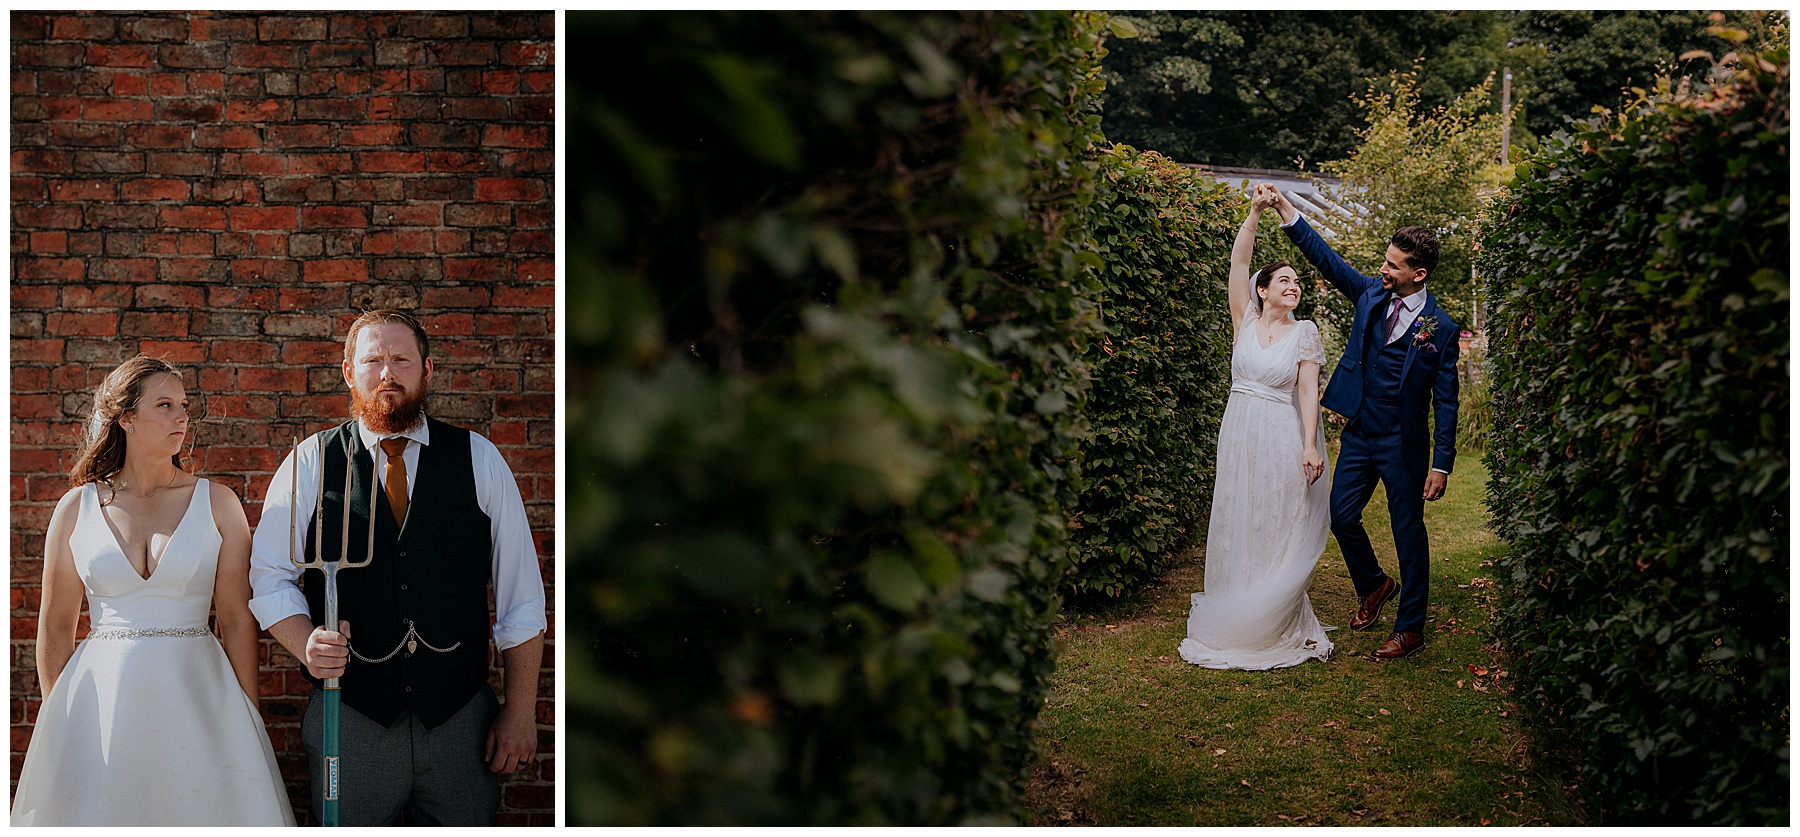 Creative Wedding Photography - The Walled Garden Wedding Venue